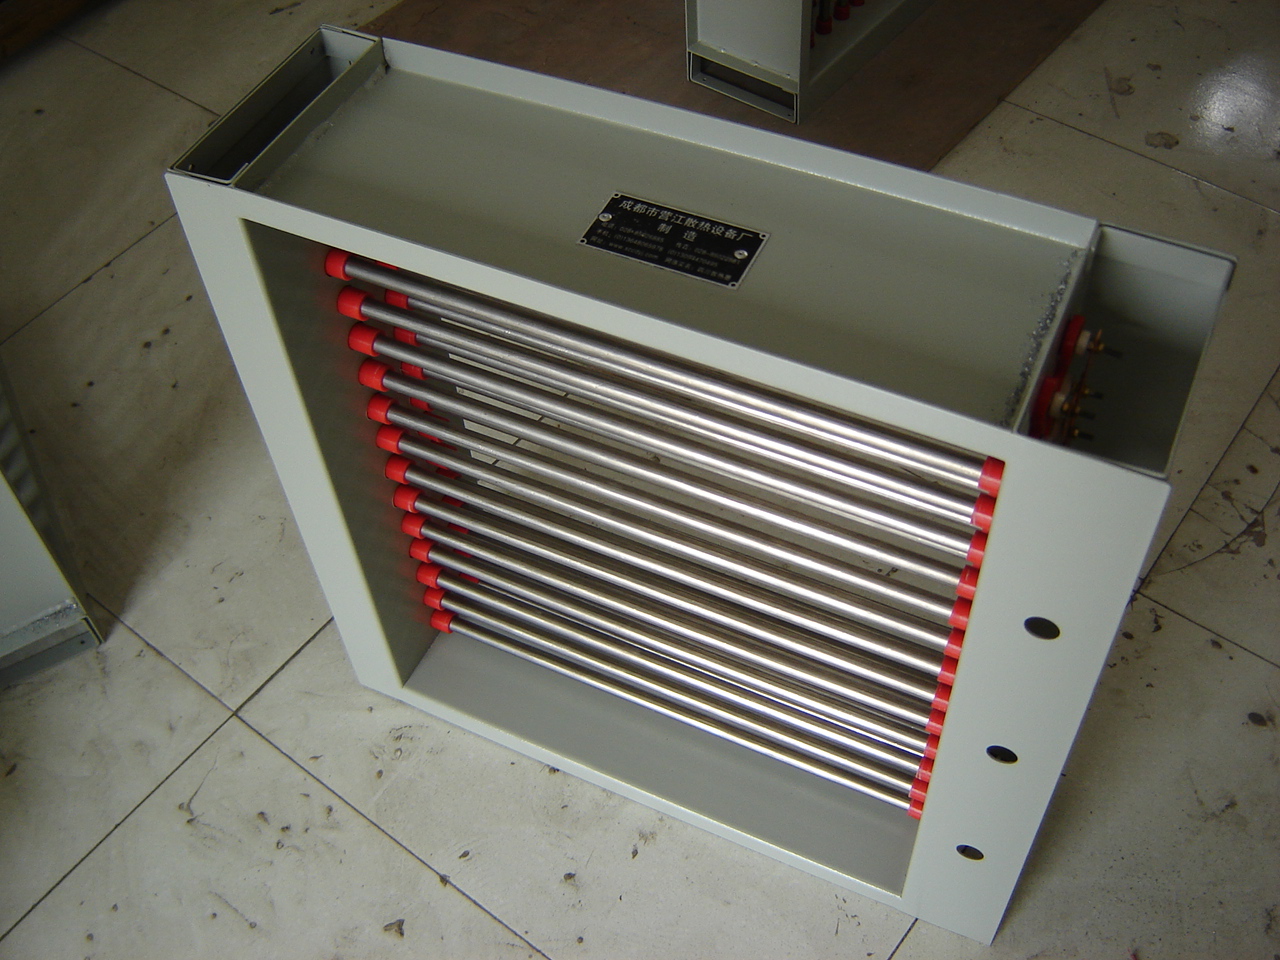 YJ-064中央空调辅助电加热器